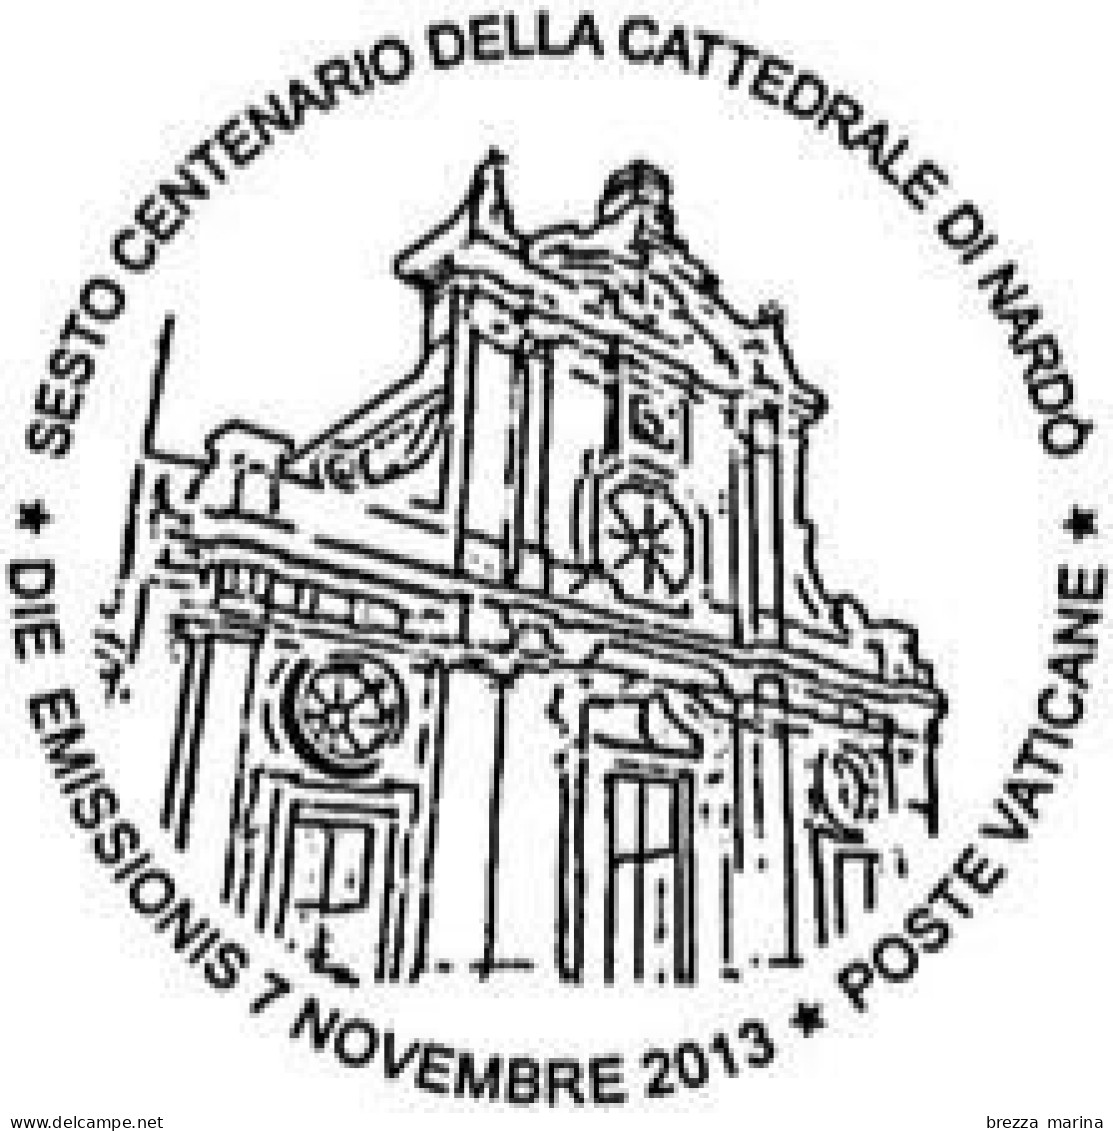 VATICANO - Usato - 2013 - Cattedrale Di Santa Maria Di Nardò - Madonna Del Giglio - 0,15 - Oblitérés